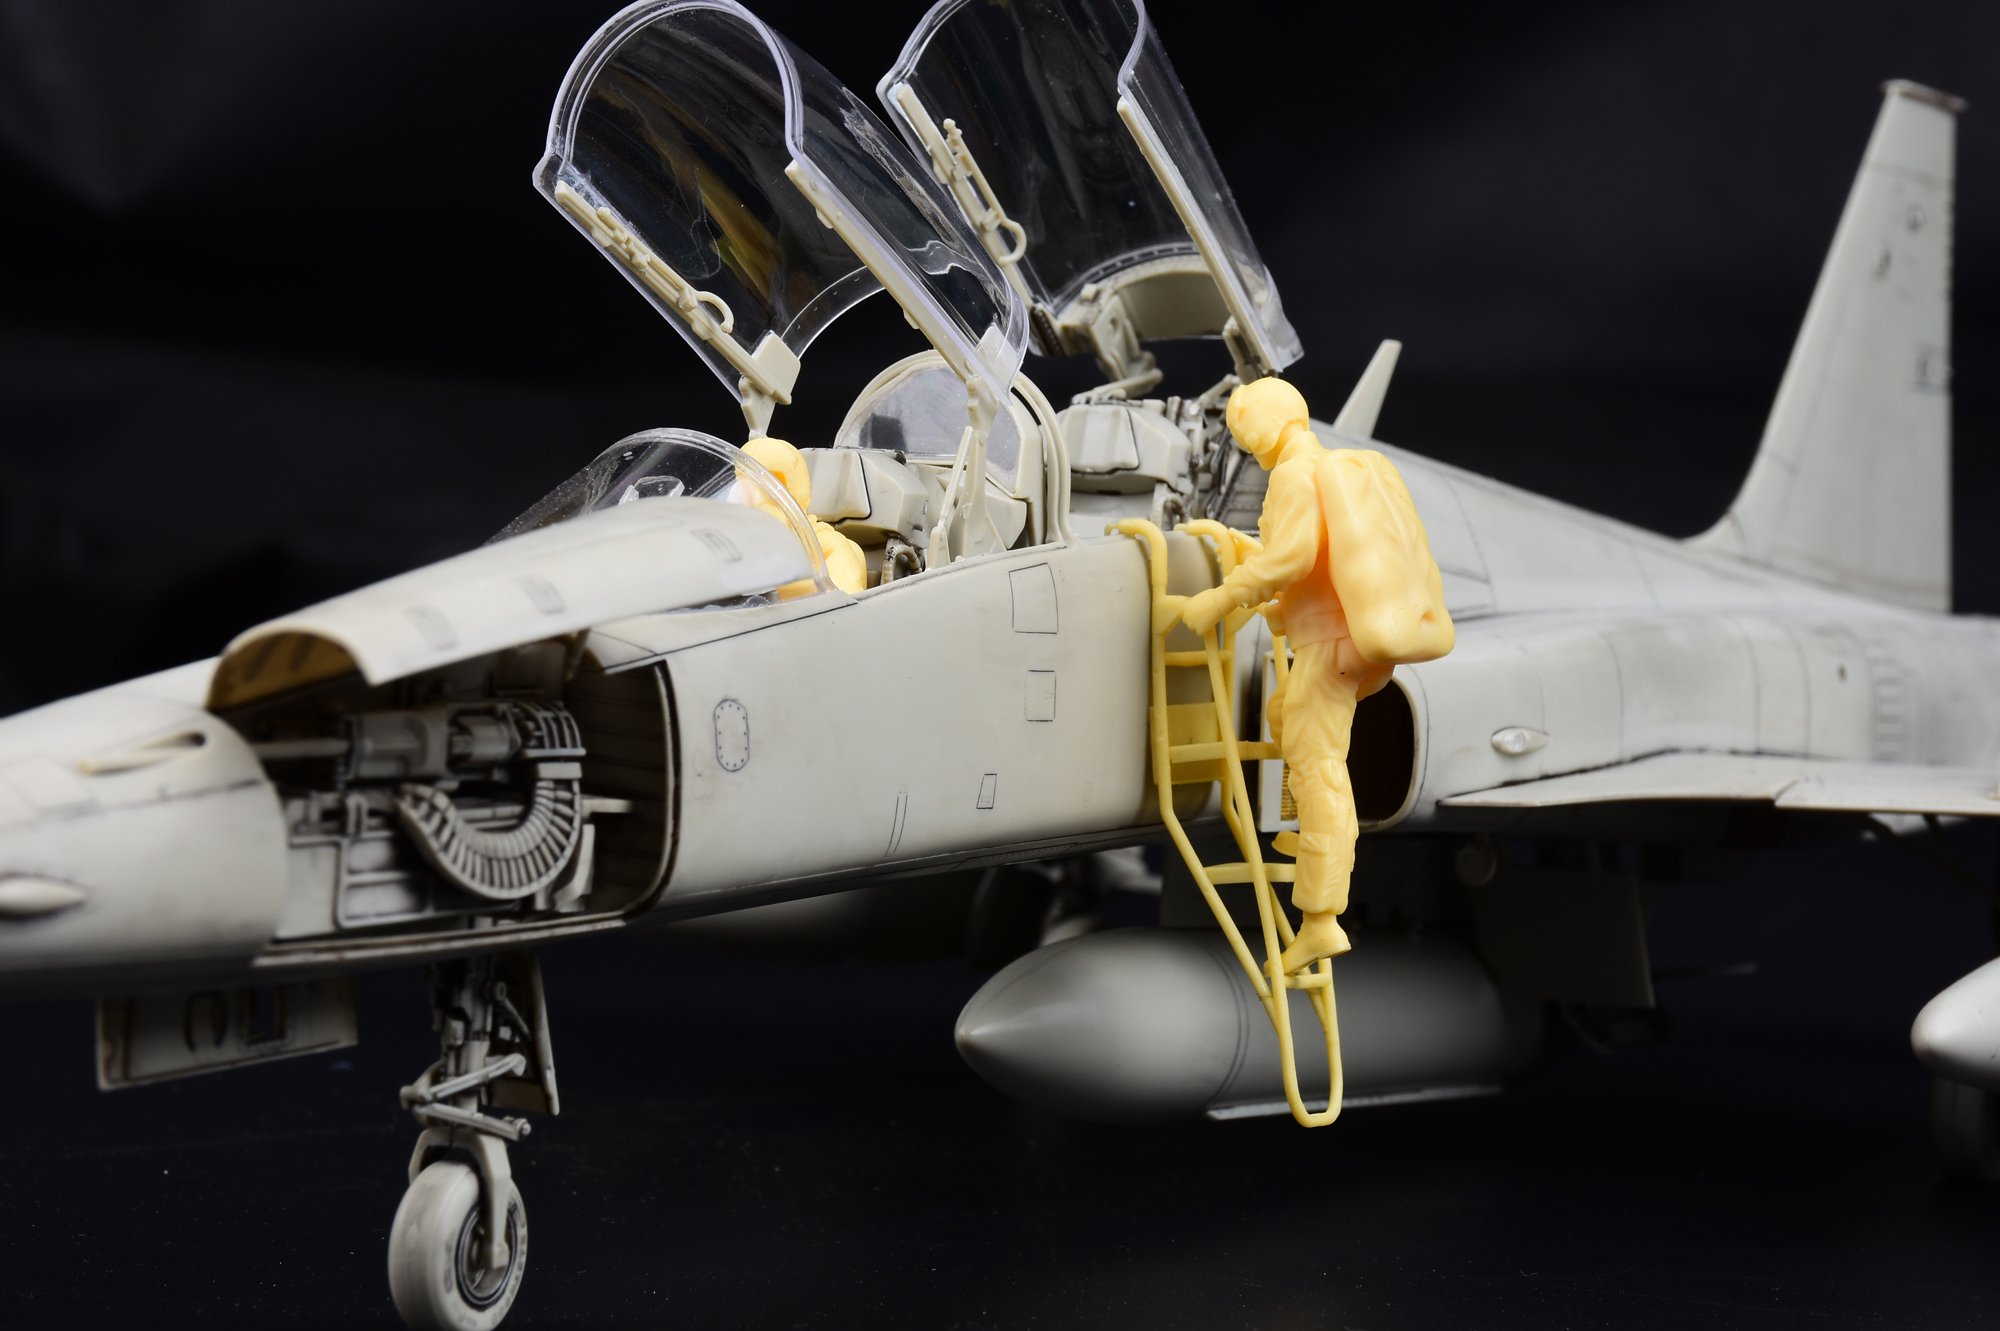 1/32 F-5F 虎II战斗机